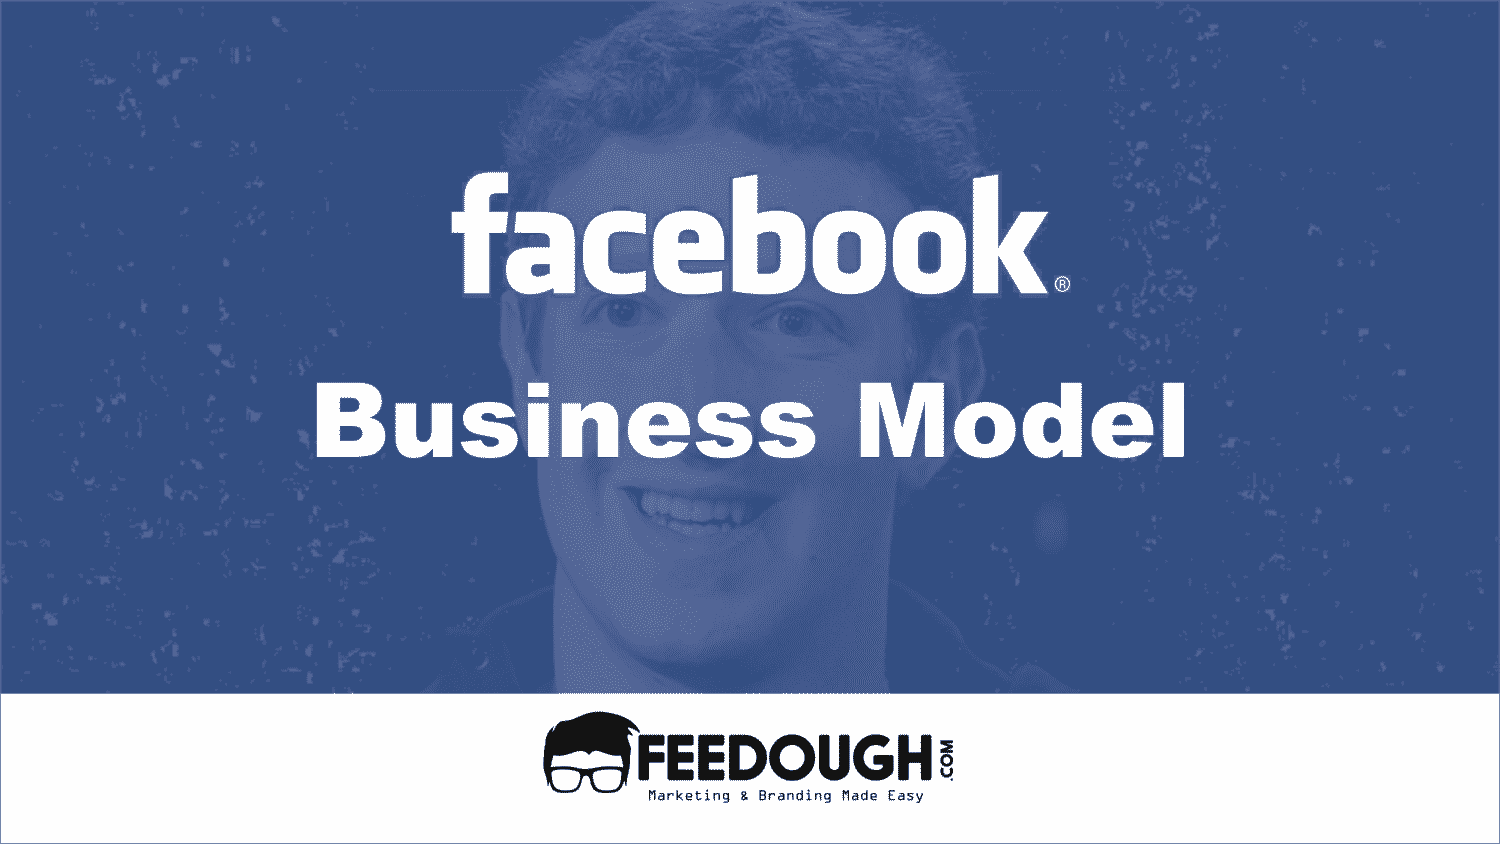 Facebook business model